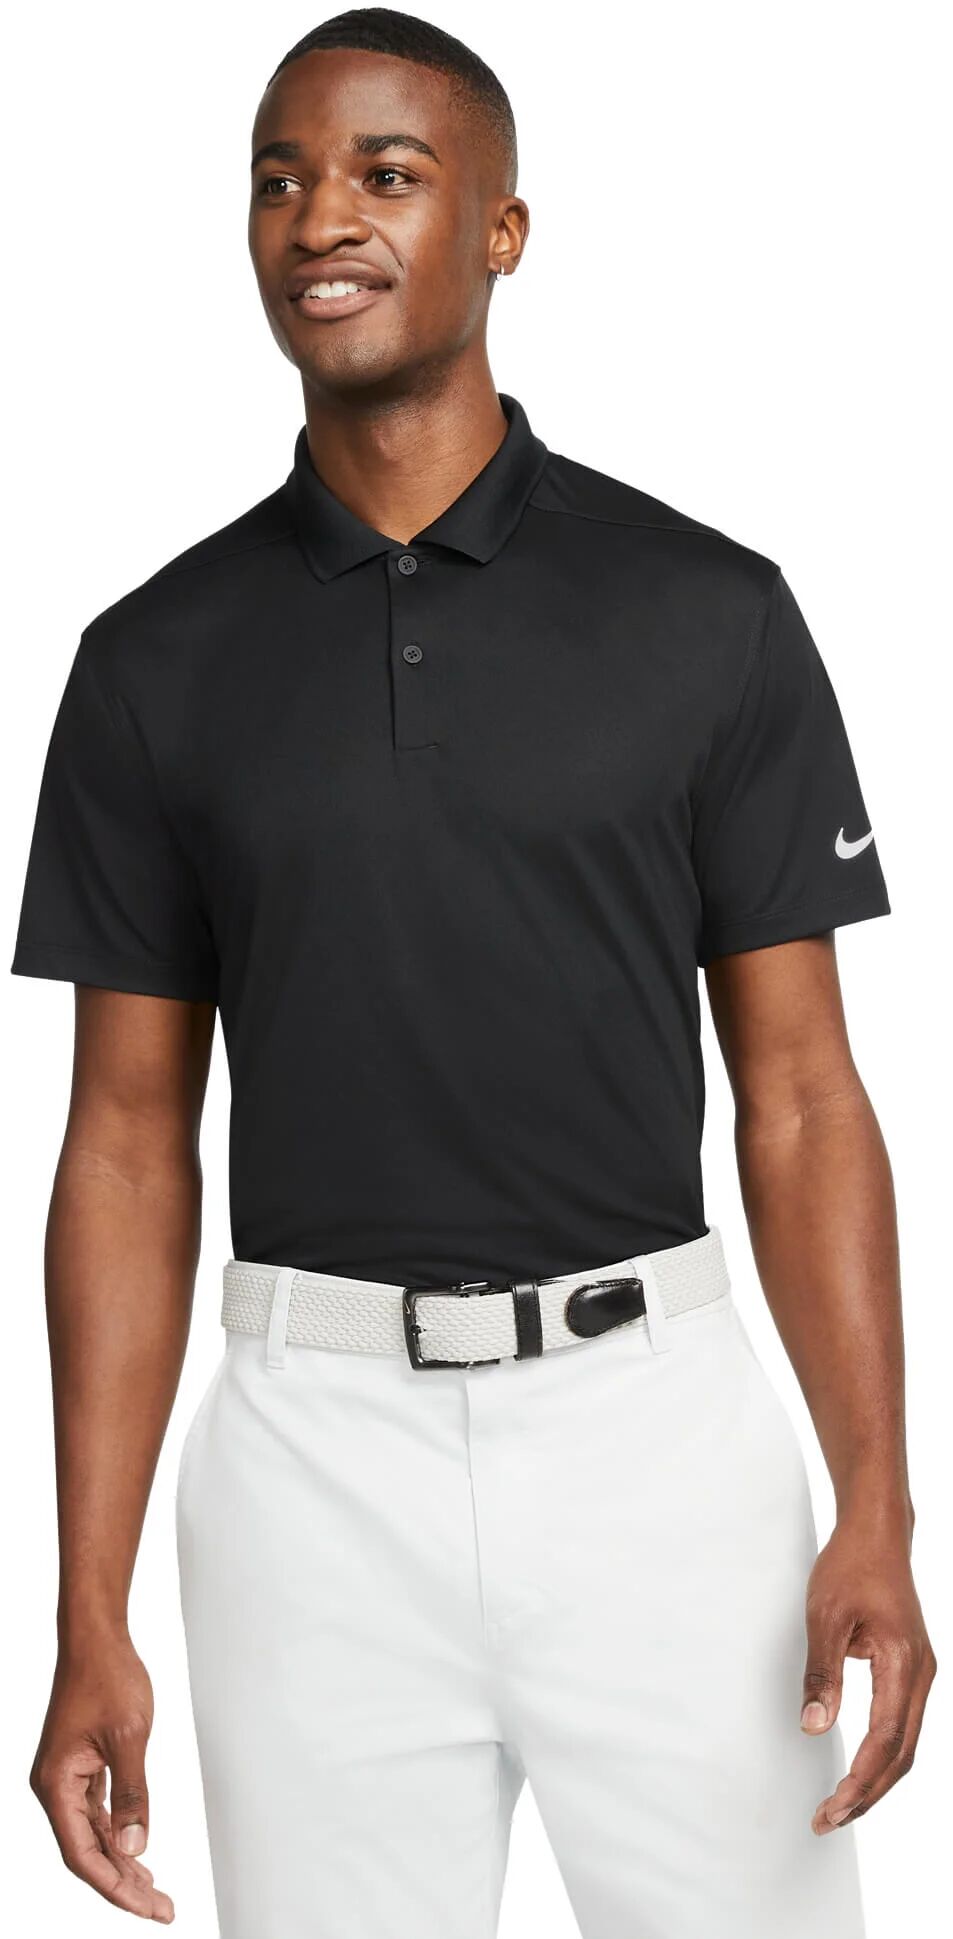 Nike Dri-FIT Victory Men's Golf Polo Shirt - Black, Size: XXL